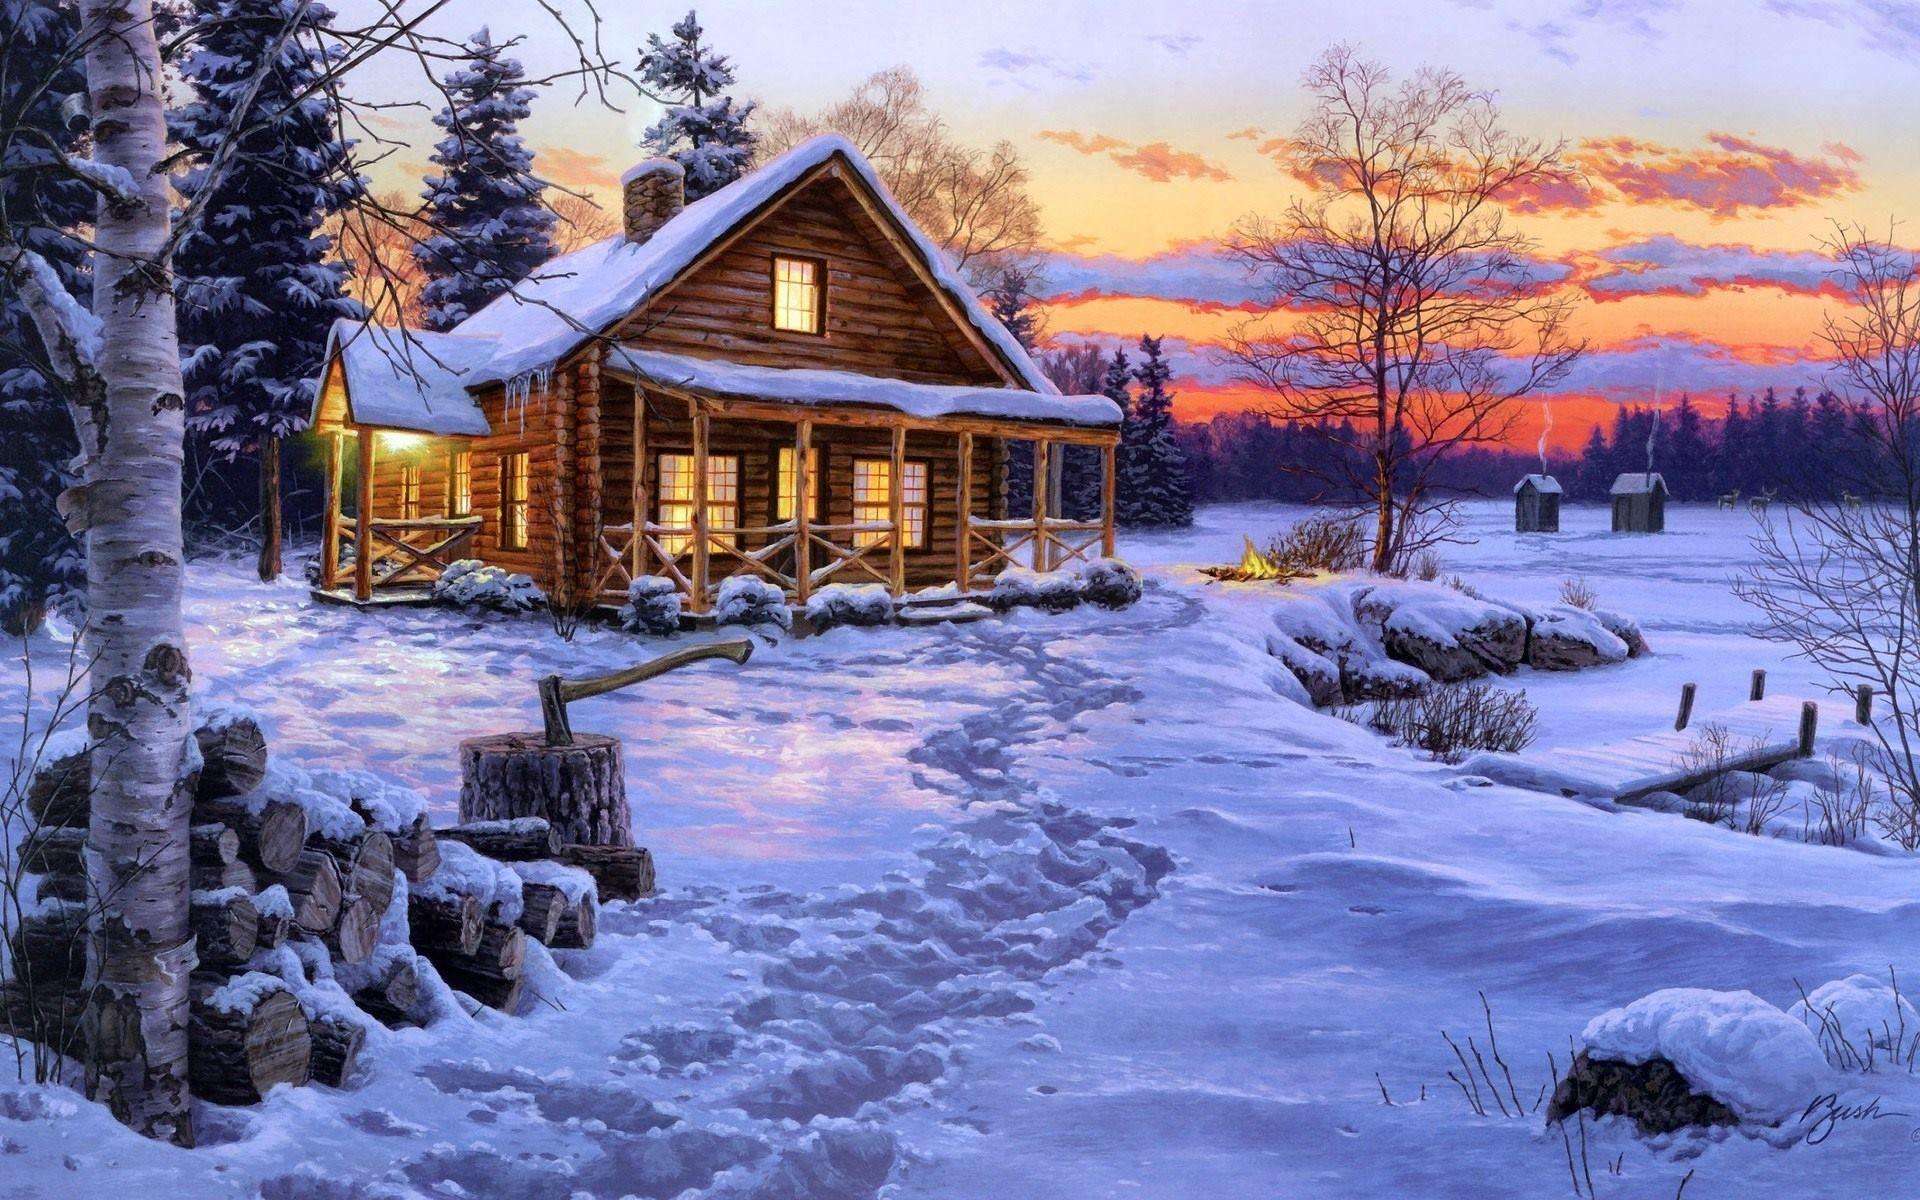 Snowy Christmas Log Cabin Wallpaper at